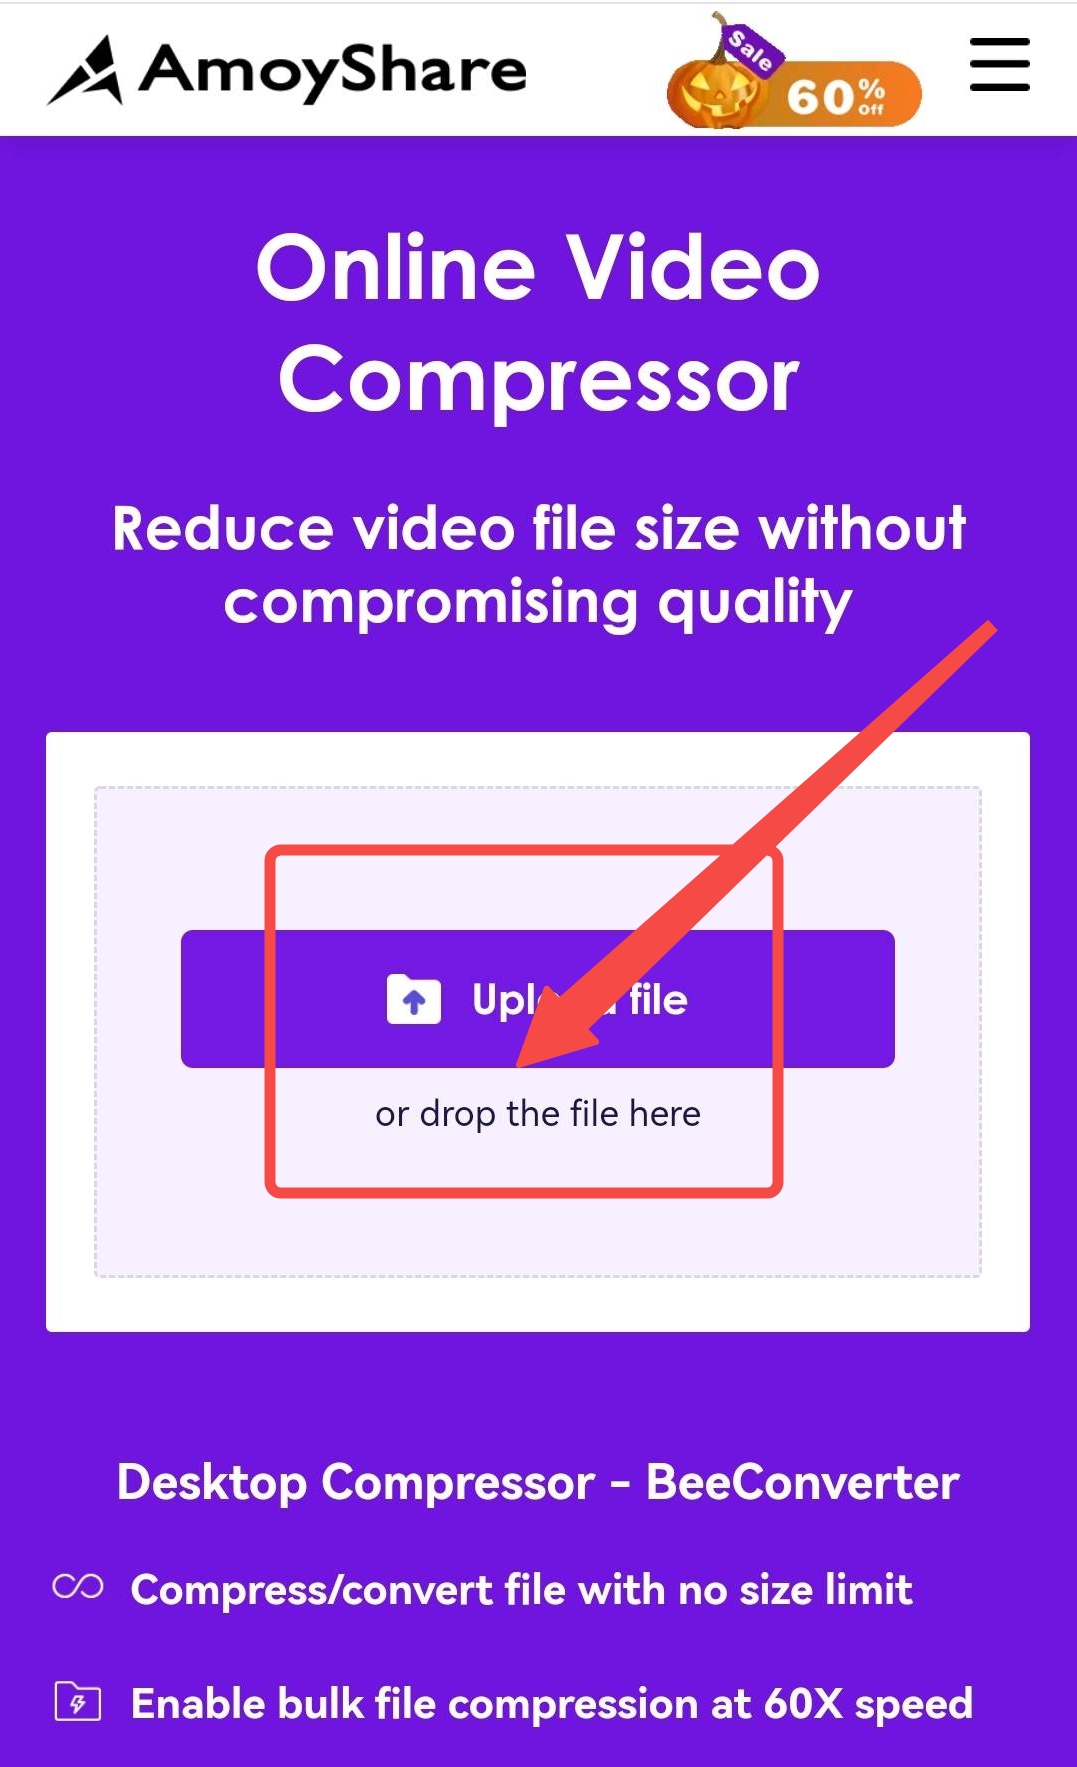 Importieren Sie Dateien in den AmoyShare Online-Videokompressor